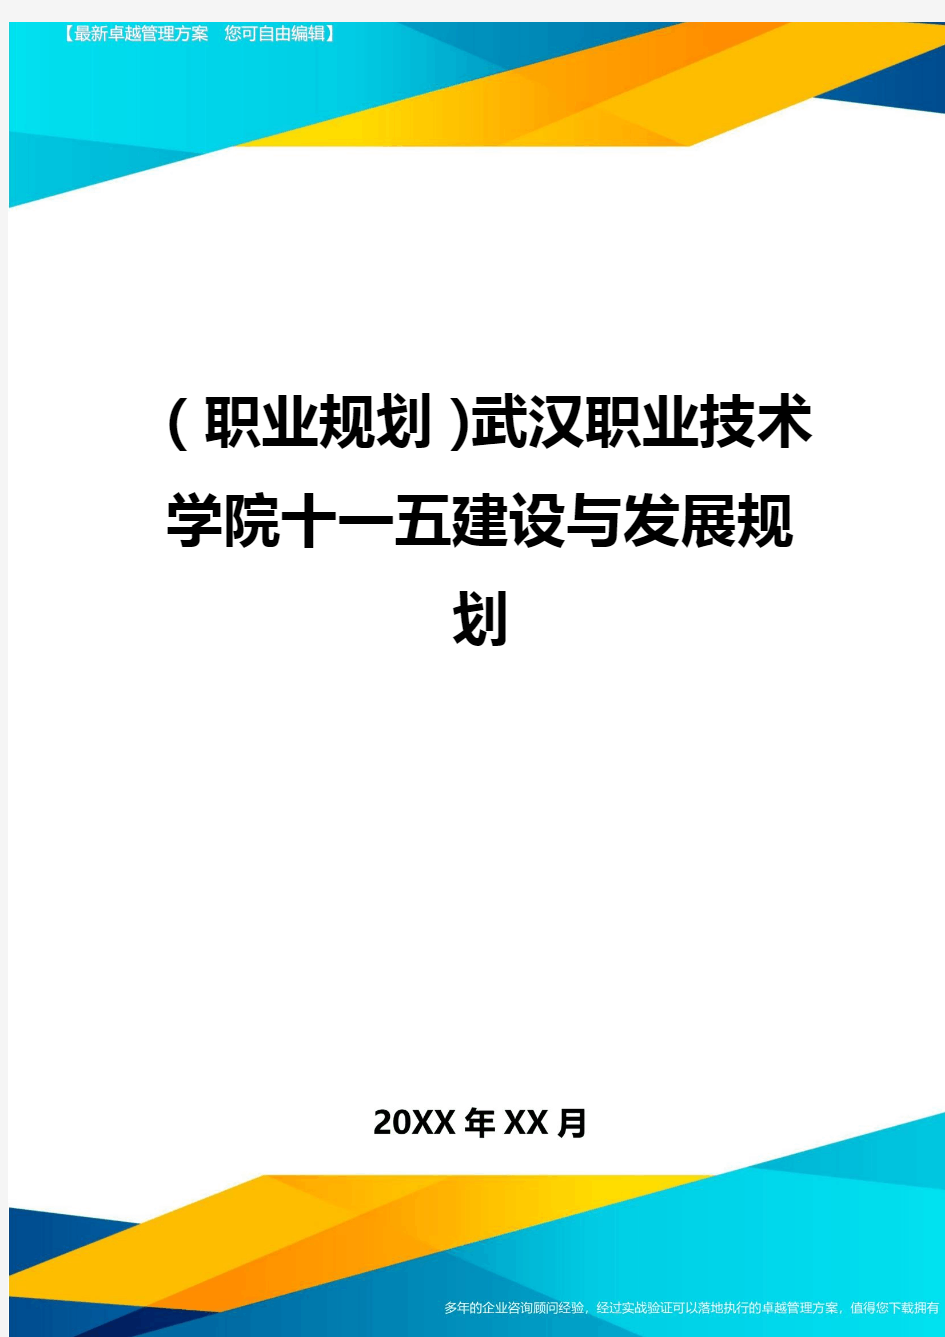 【职业规划)武汉职业技术学院十一五建设与发展规划